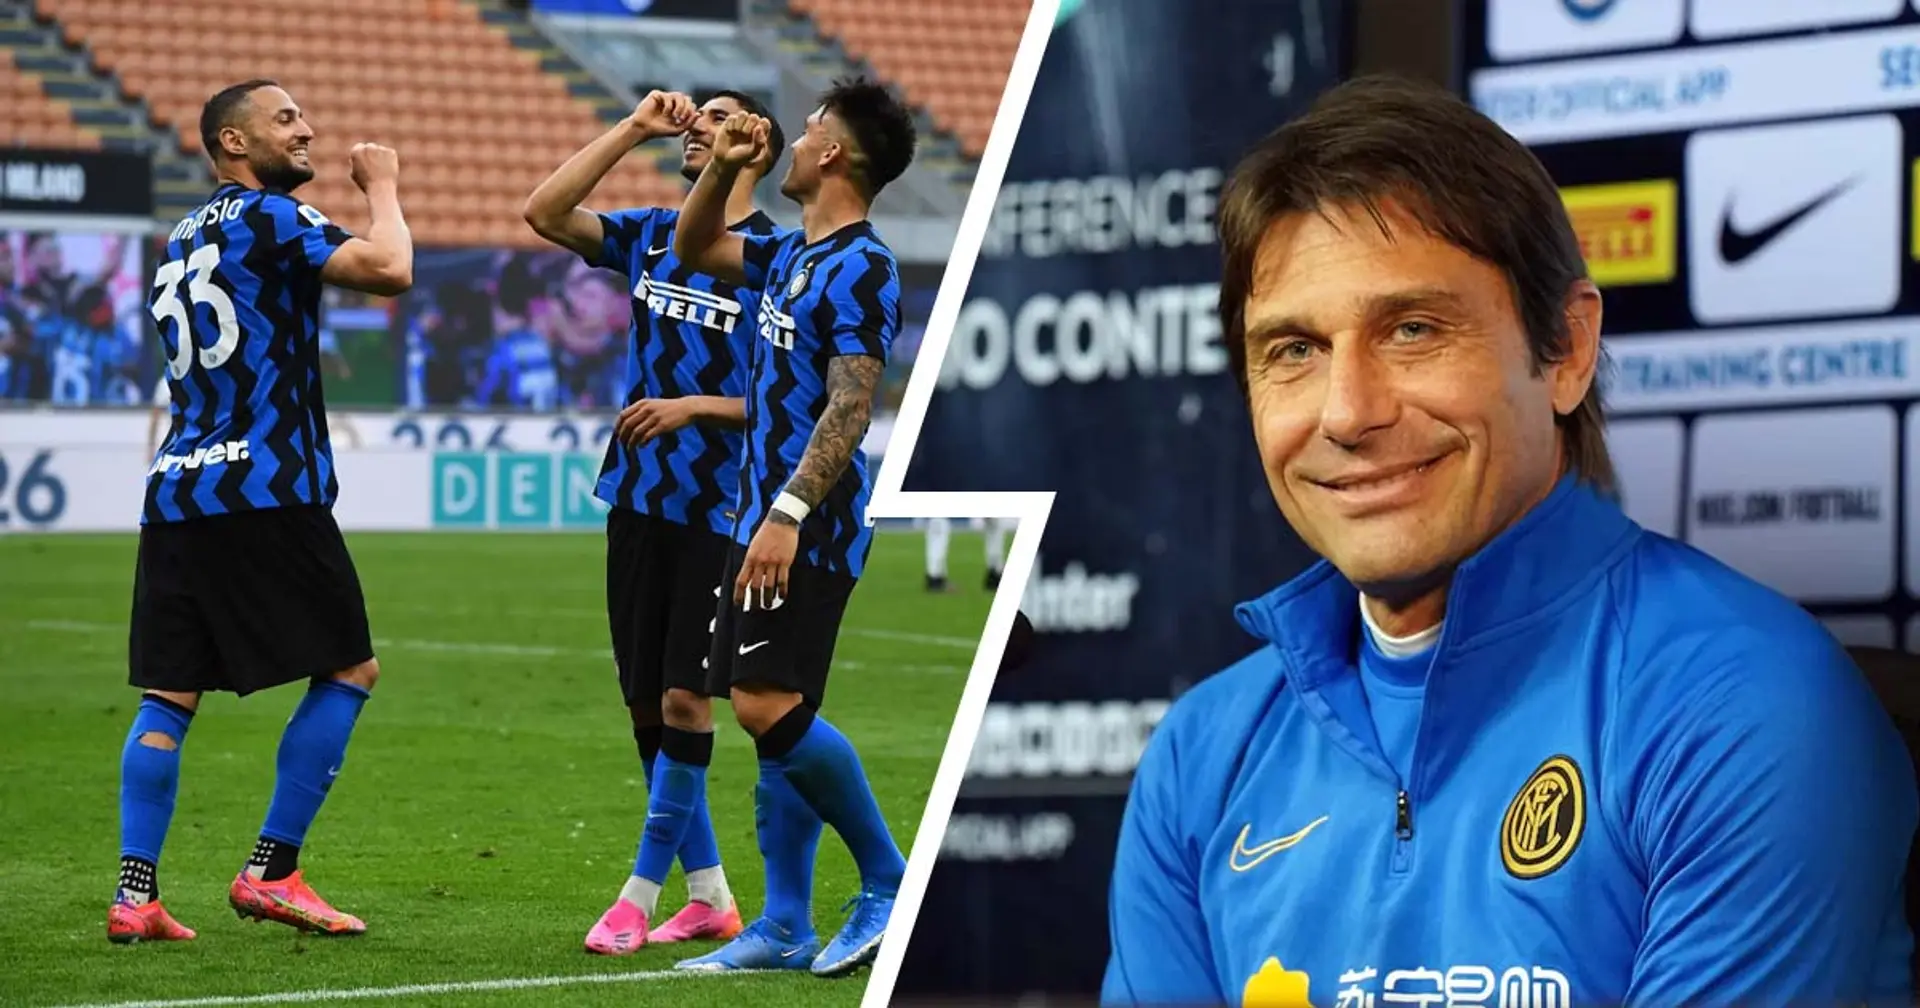 Possibili titolari e riserve dell'Inter per la partita contro l'Udinese alla luce del match contro la Juventus